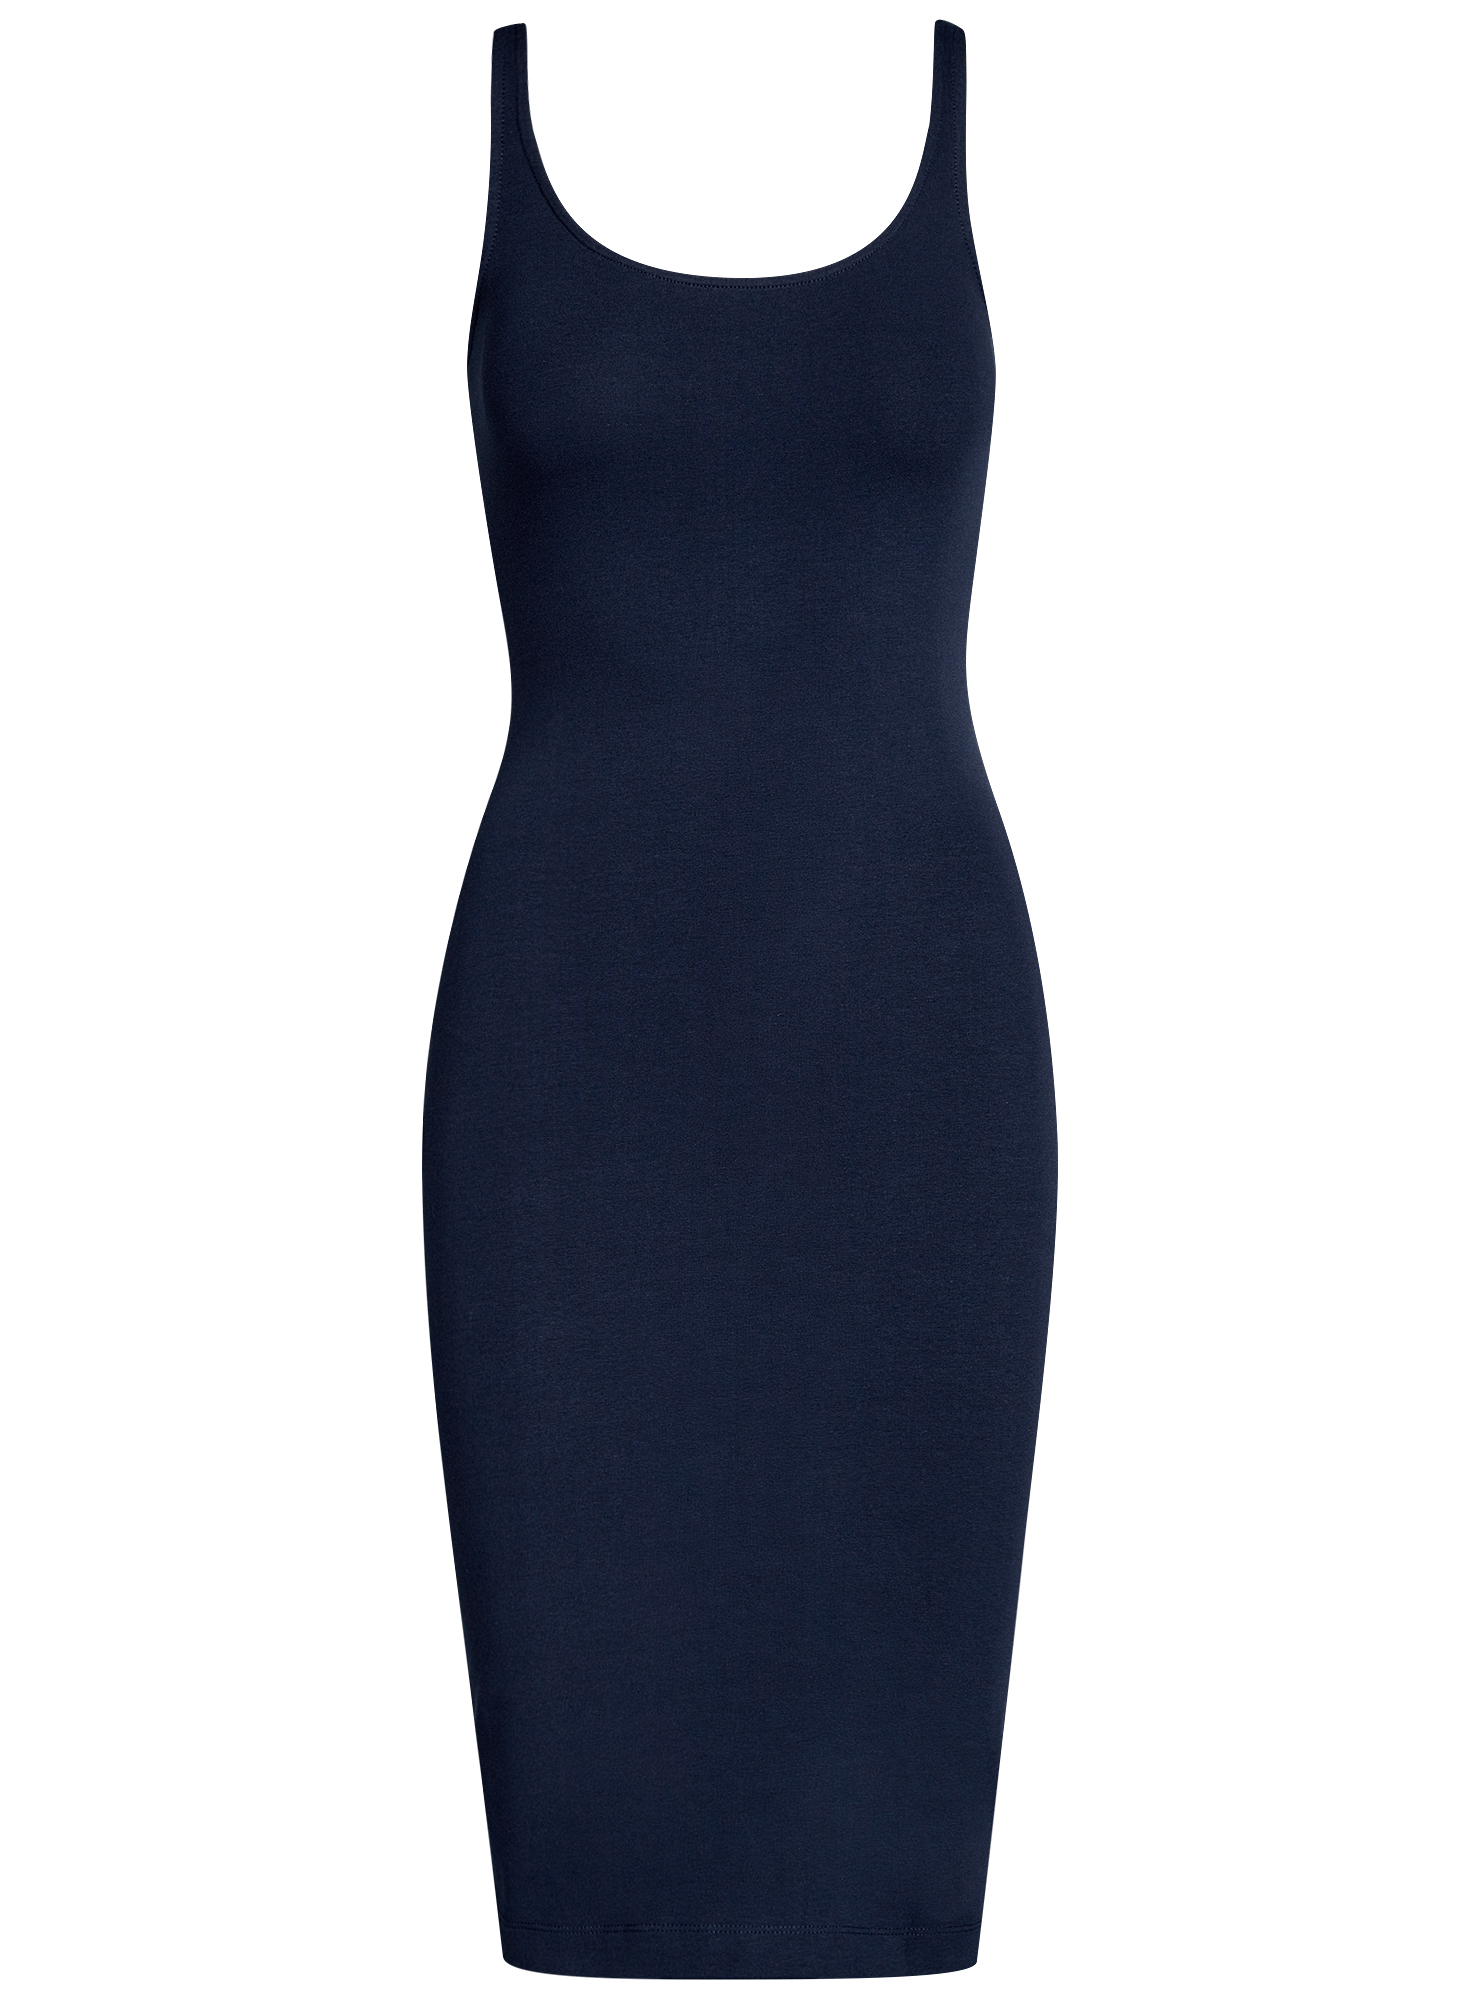 Платье женское oodji 14015007-2B синее XL